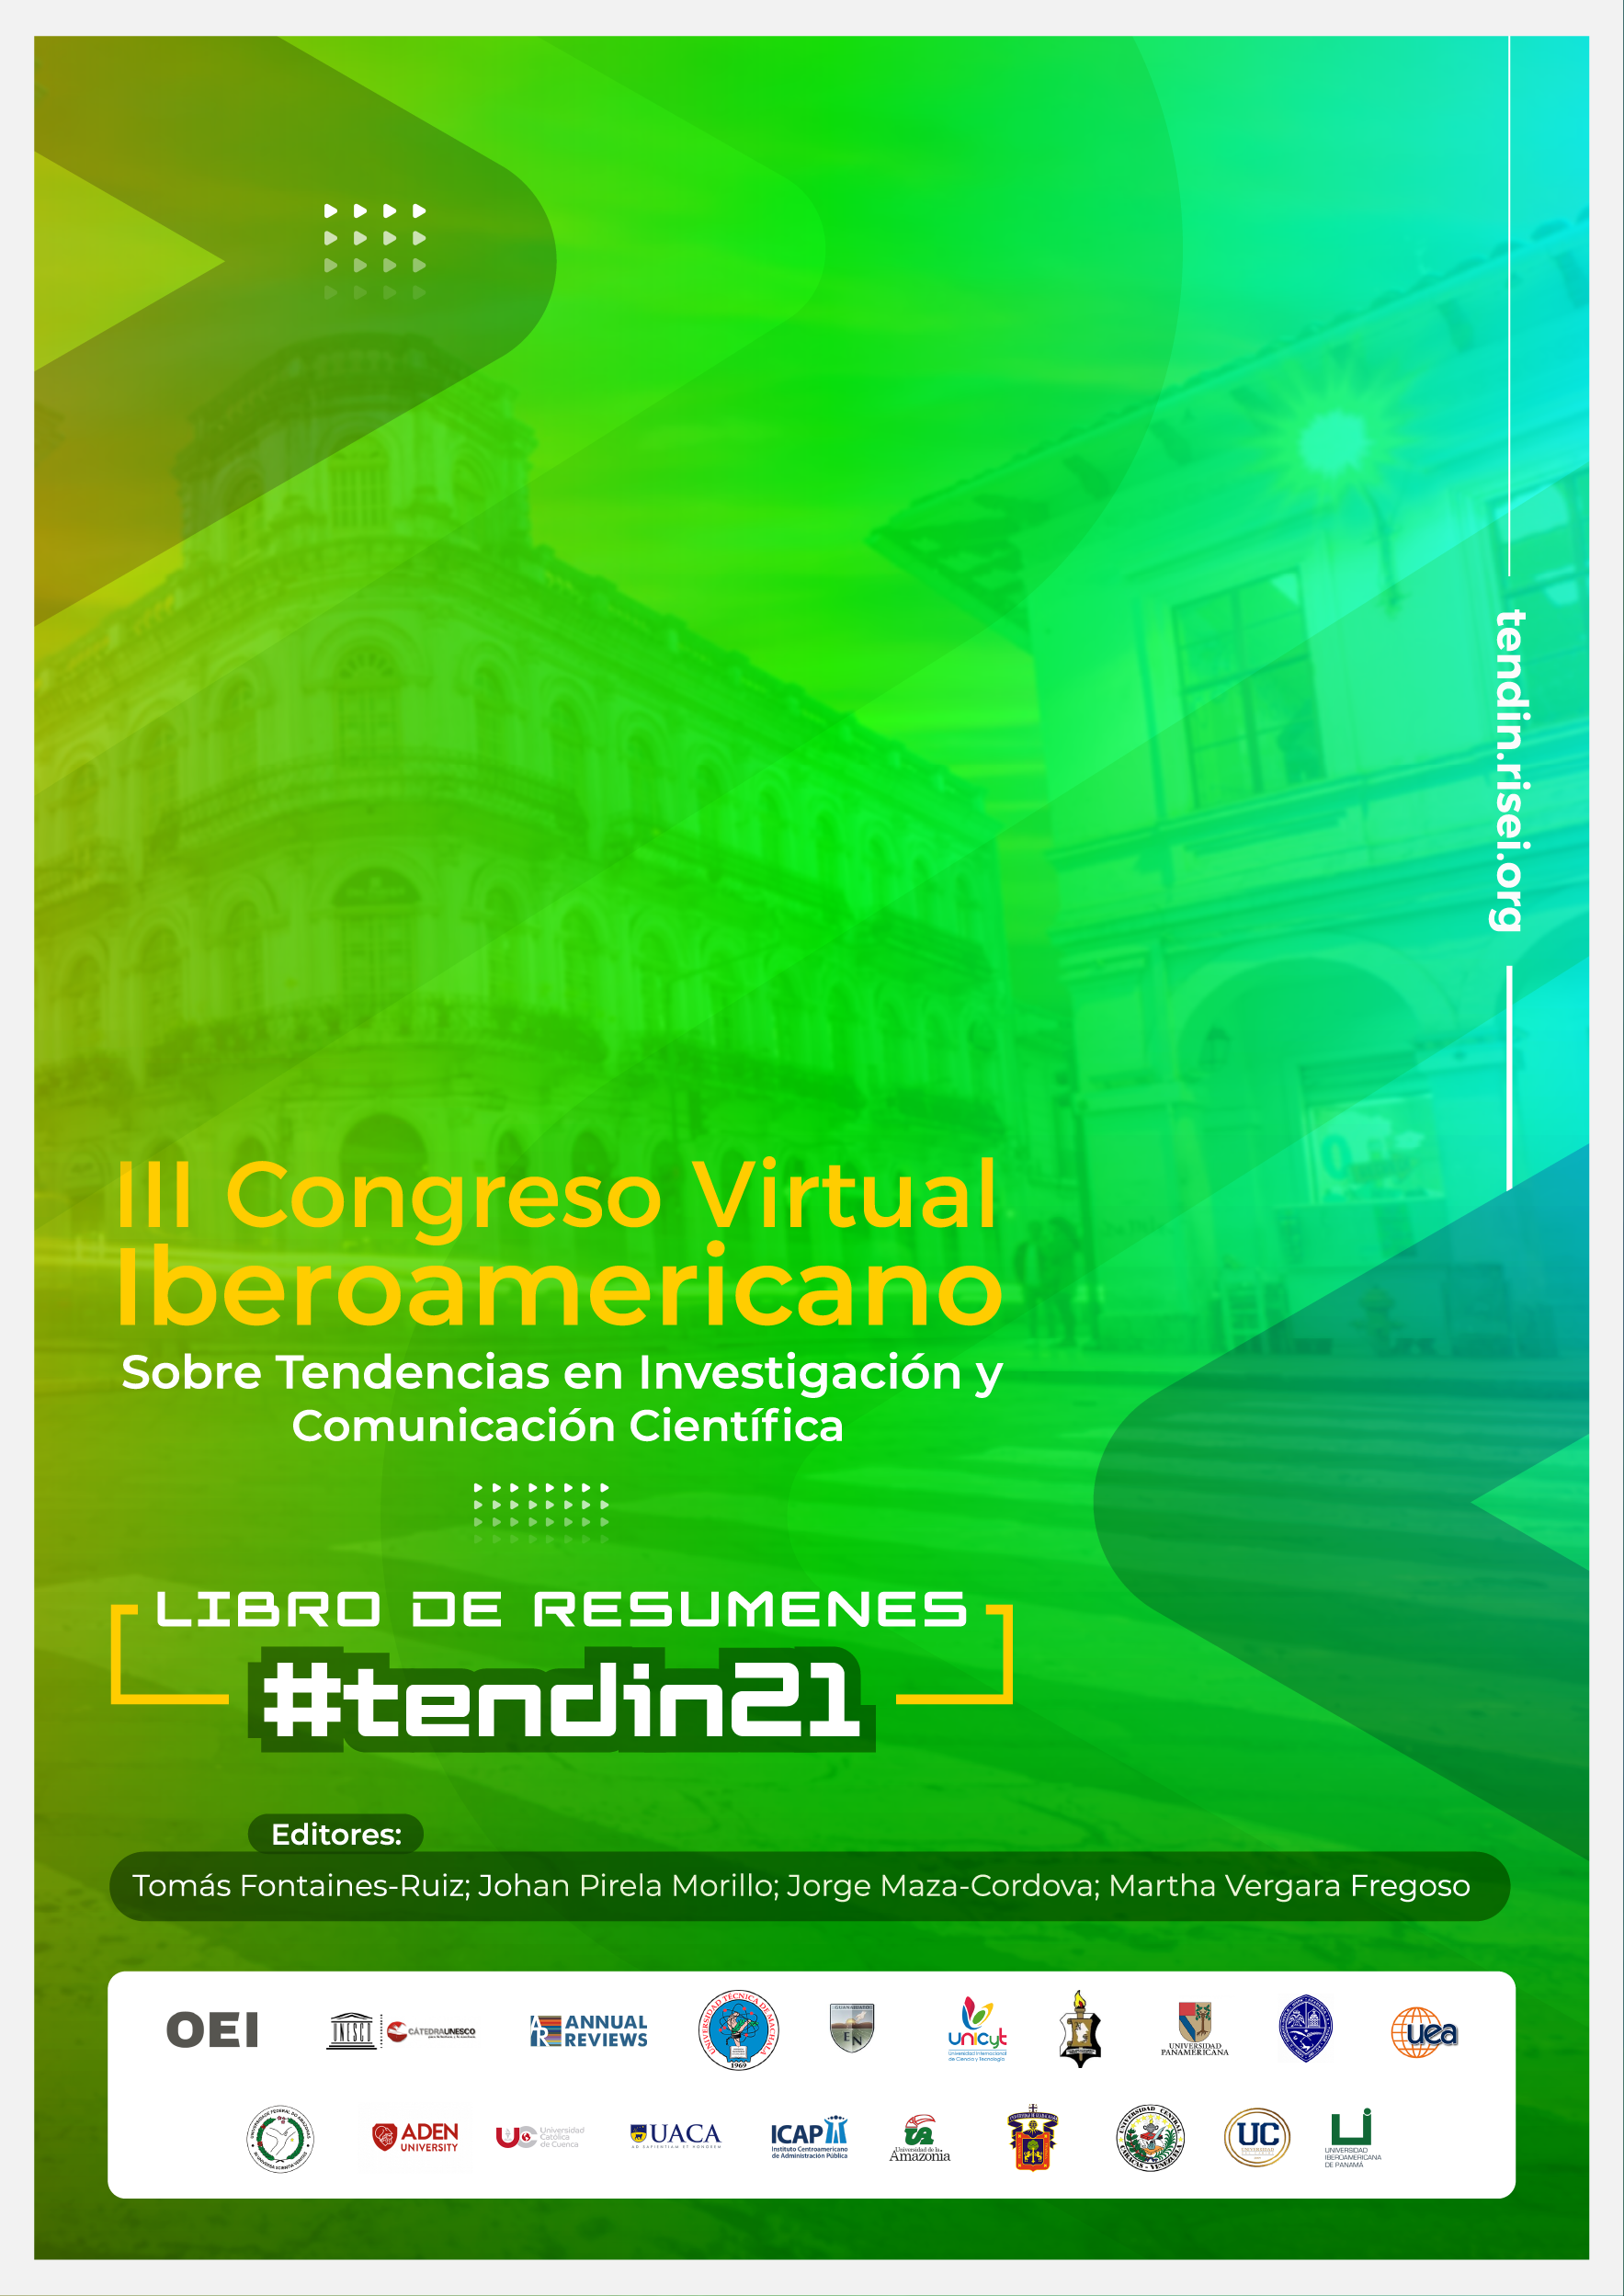 Libro de Resúmenes del III Congreso Virtual Iberoamericano sobre Tendencia en Investigación y Comunicación Científica. Tendin21